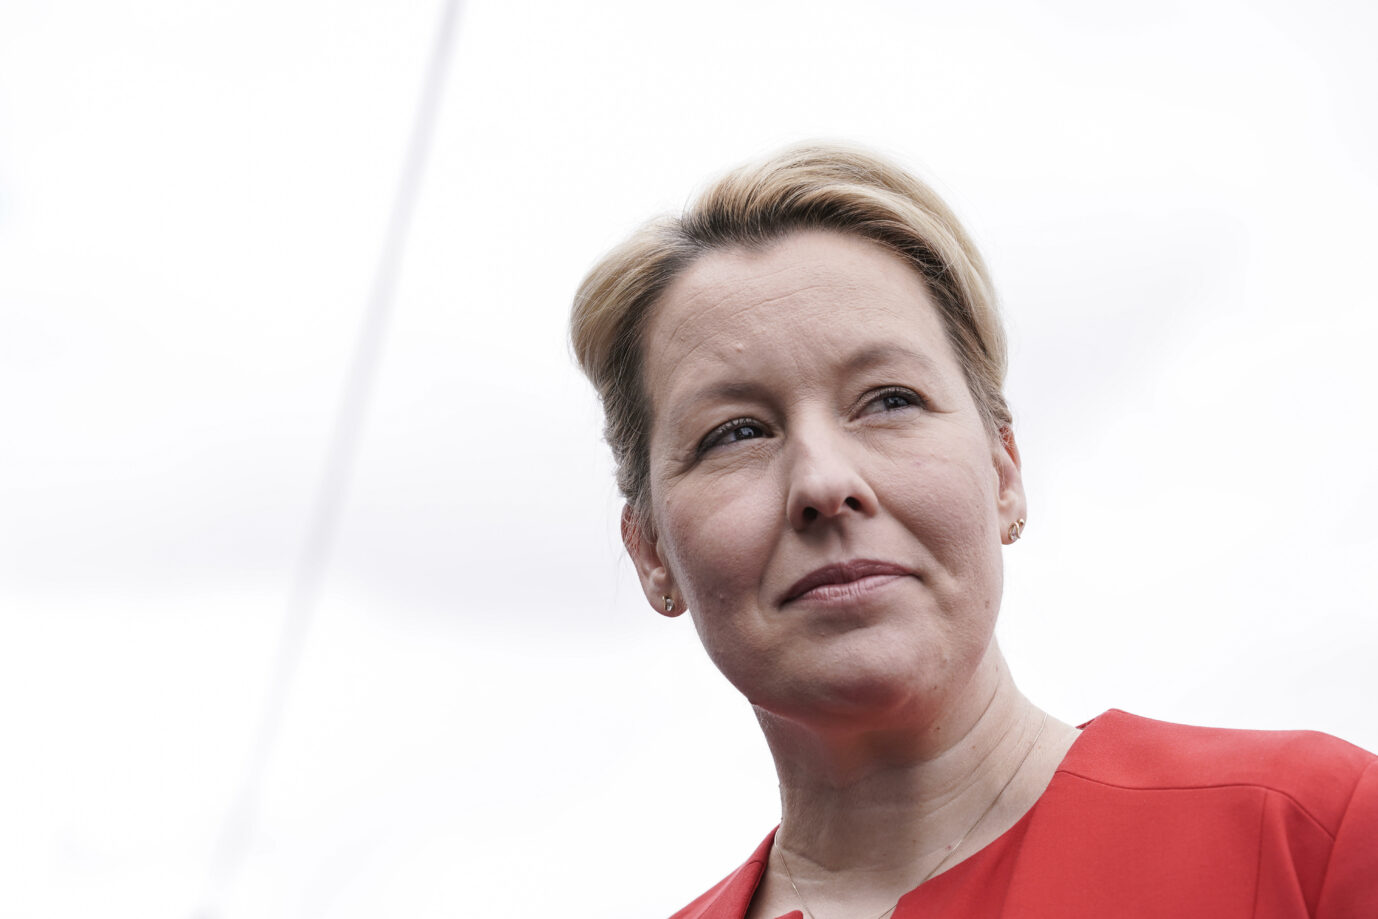 Die SPD-Kandidatin für das Amt des Regierenden Bürgermeisters von Berlin, Franziska Giffey, ist mit neuen Plagiatsvorwürfen konfrontiert Foto: picture alliance / Flashpic | Jens Krick